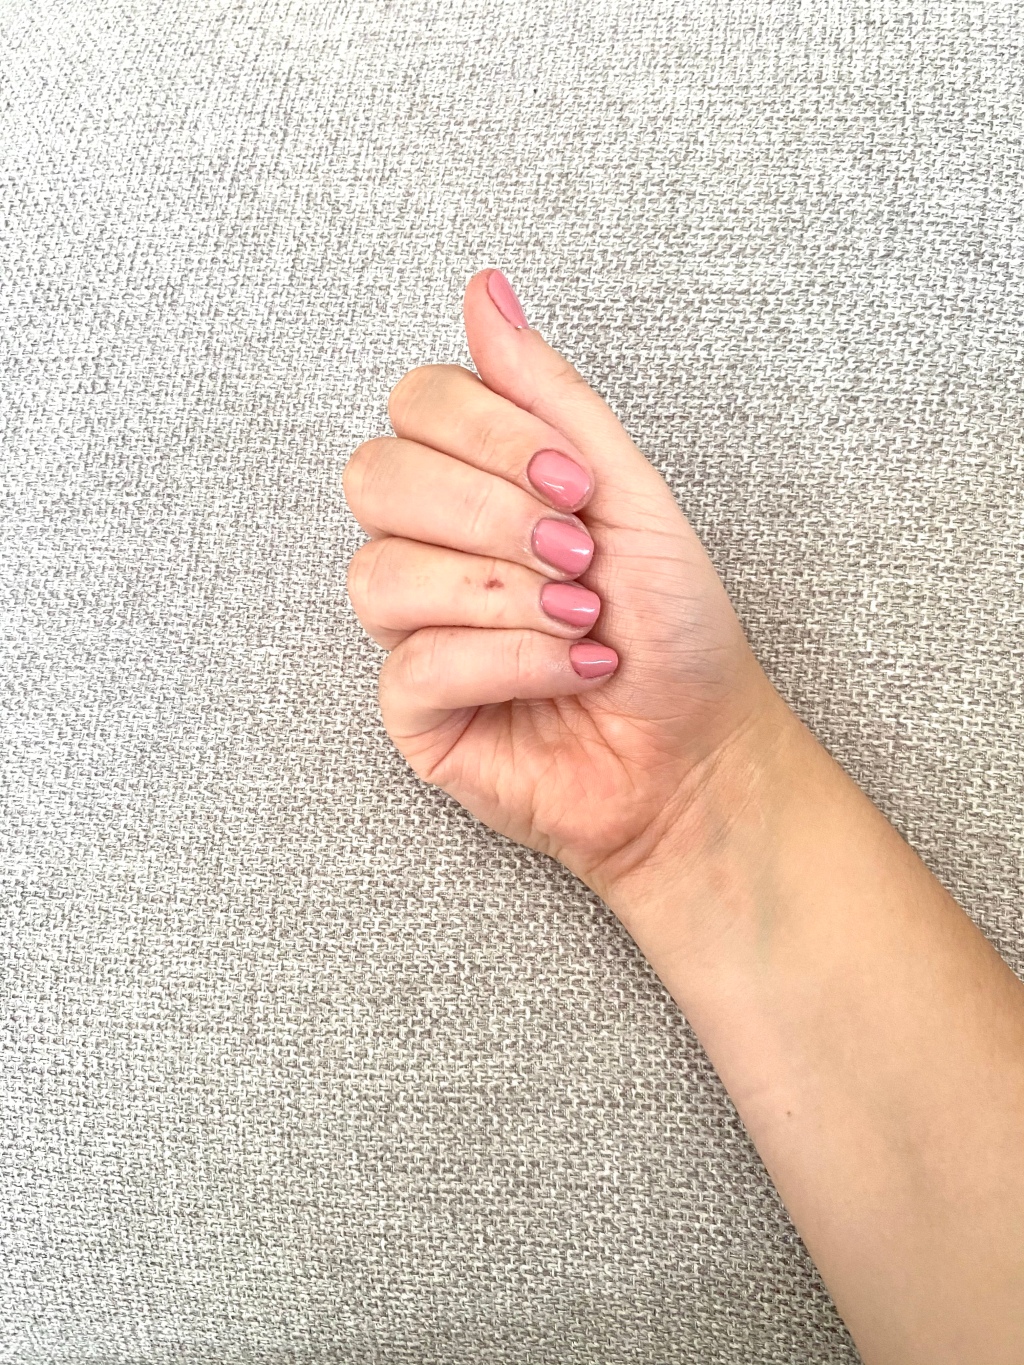 This gel nail polish is incredibly long lasting